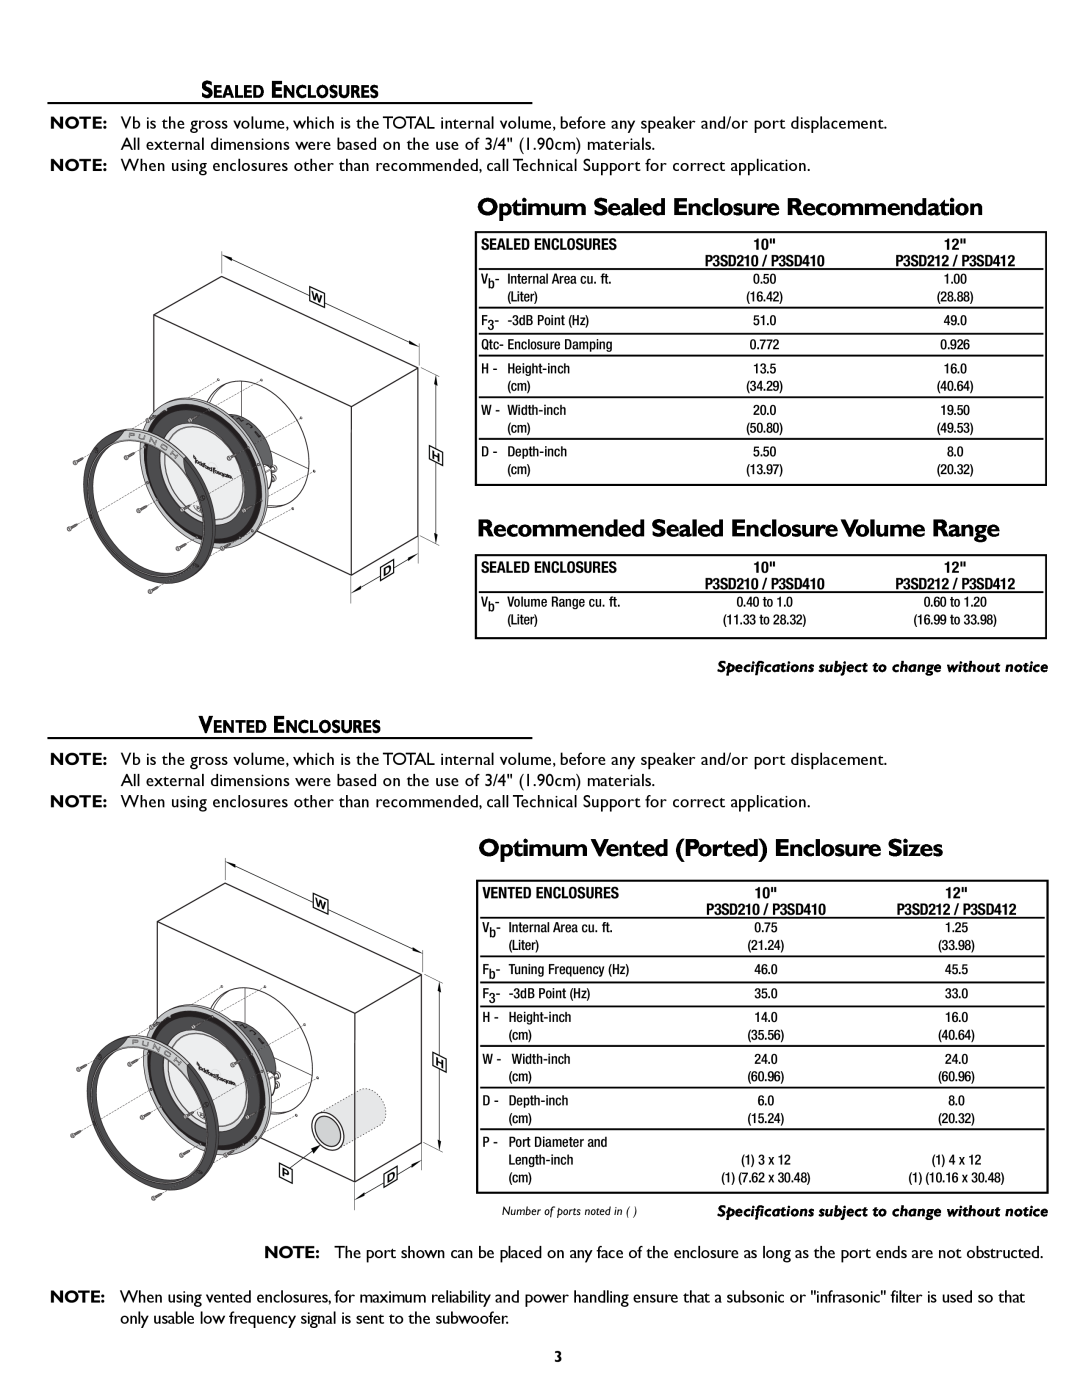 Rockford Fosgate P3S Optimum Sealed Enclosure Recommendation, OptimumVented Ported Enclosure Sizes, Sealed Enclosures 